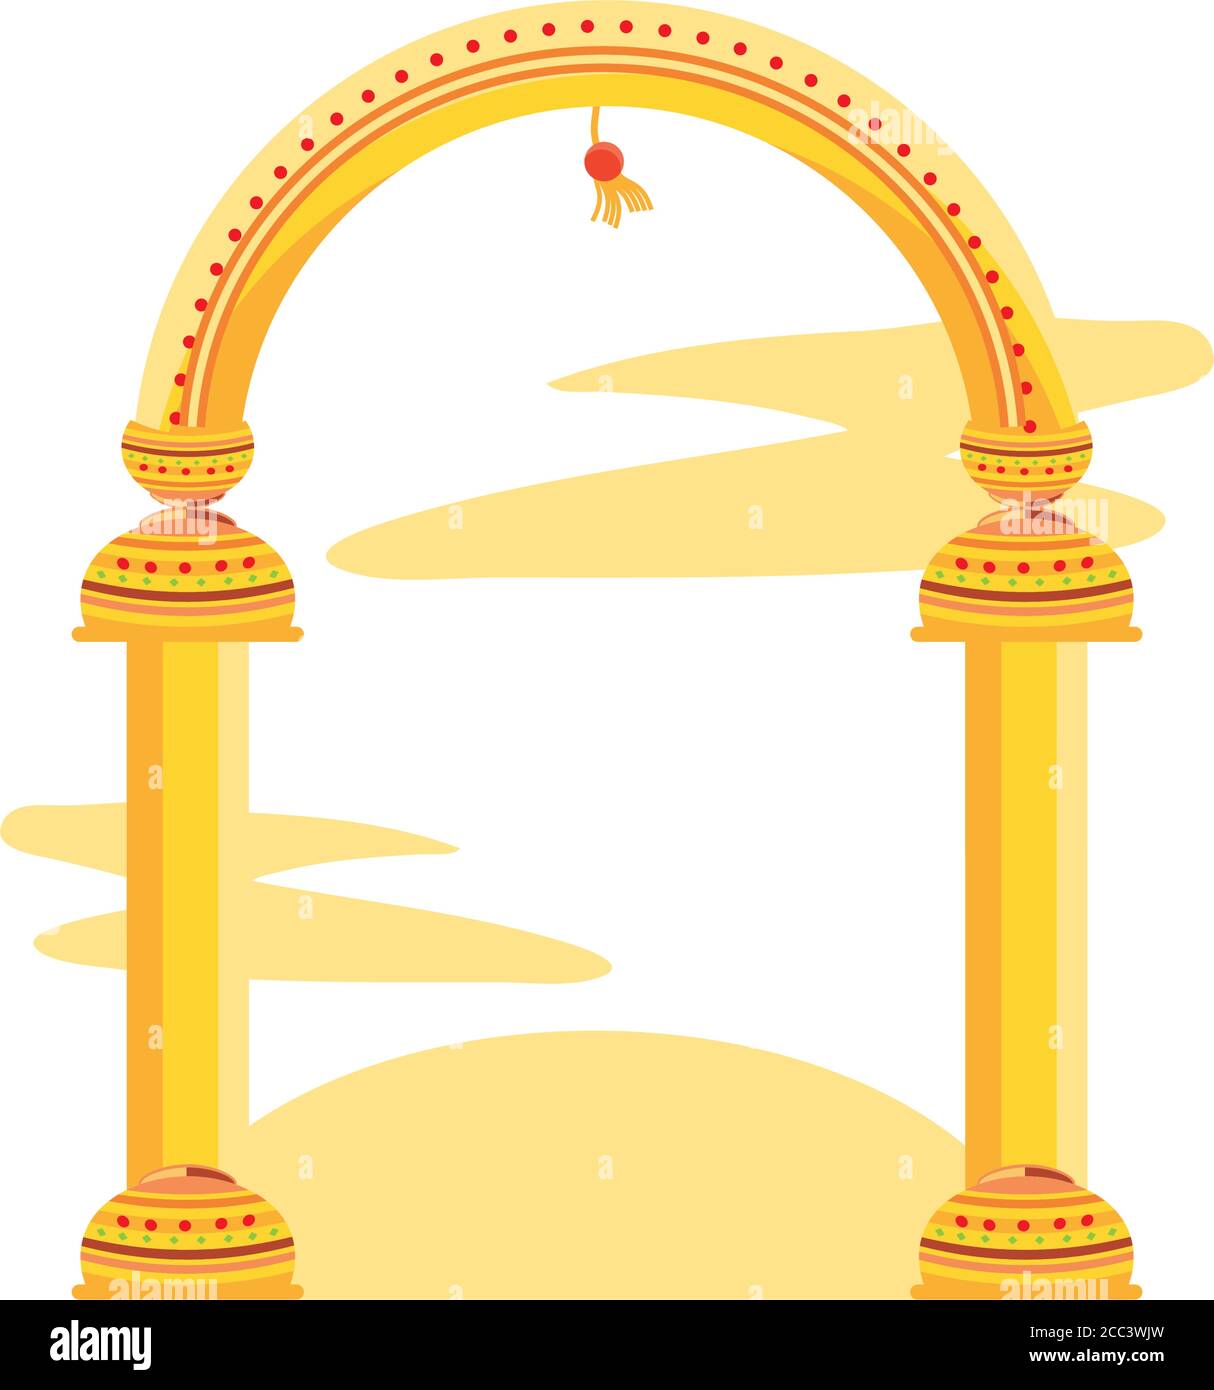 golden column arc on white background vector illustration desing Stock Vector